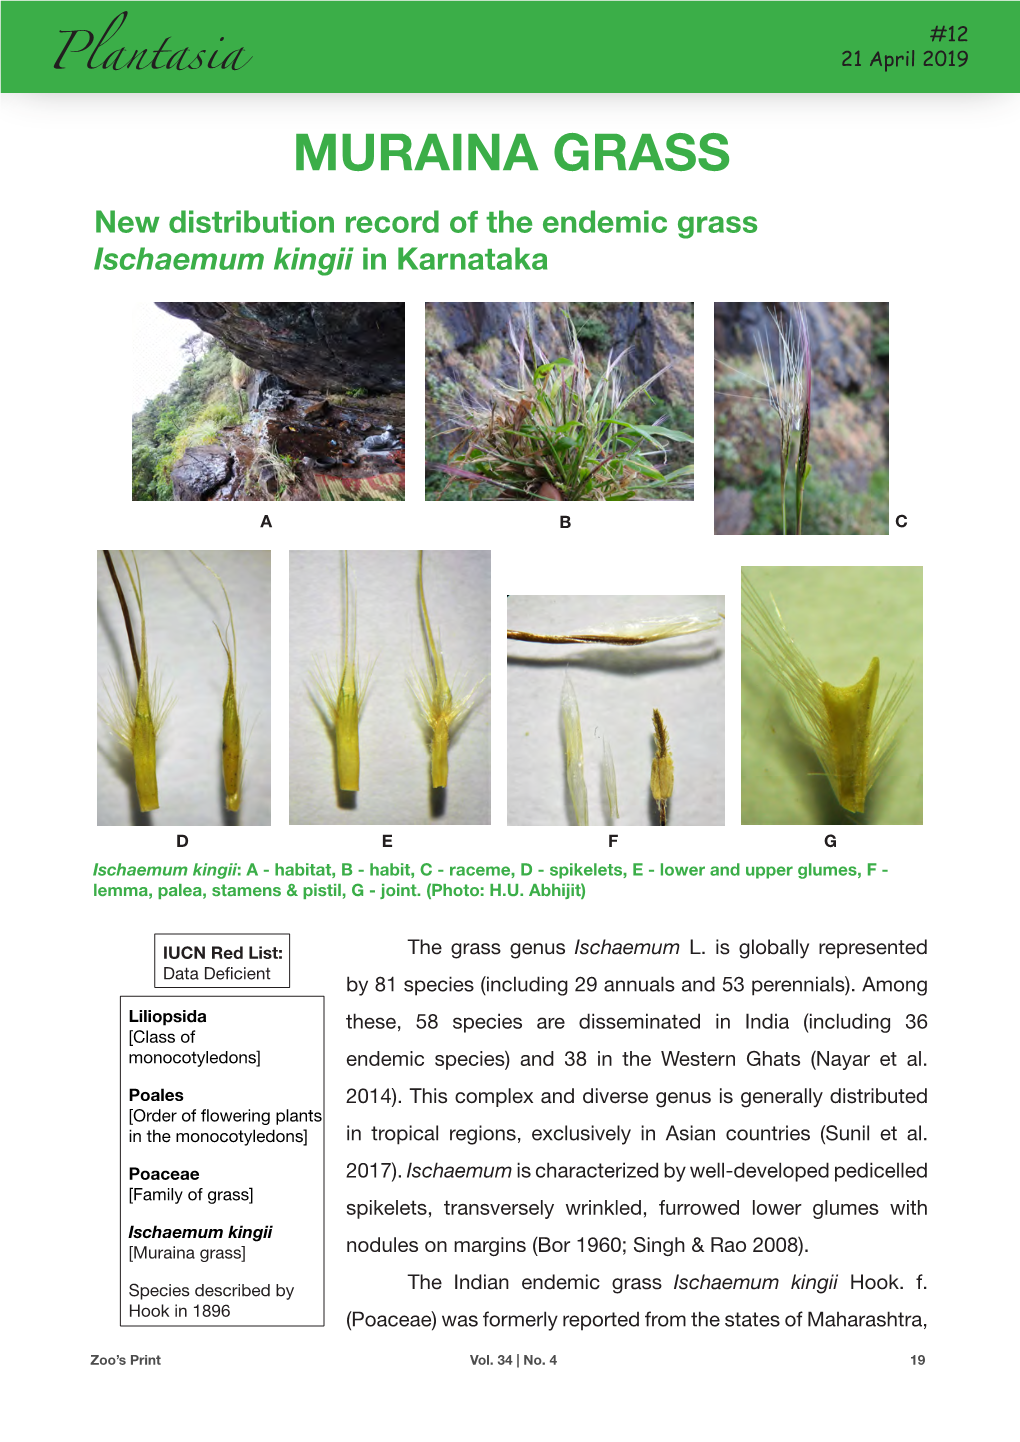 MURAINA GRASS New Distribution Record of the Endemic Grass Ischaemum Kingii in Karnataka